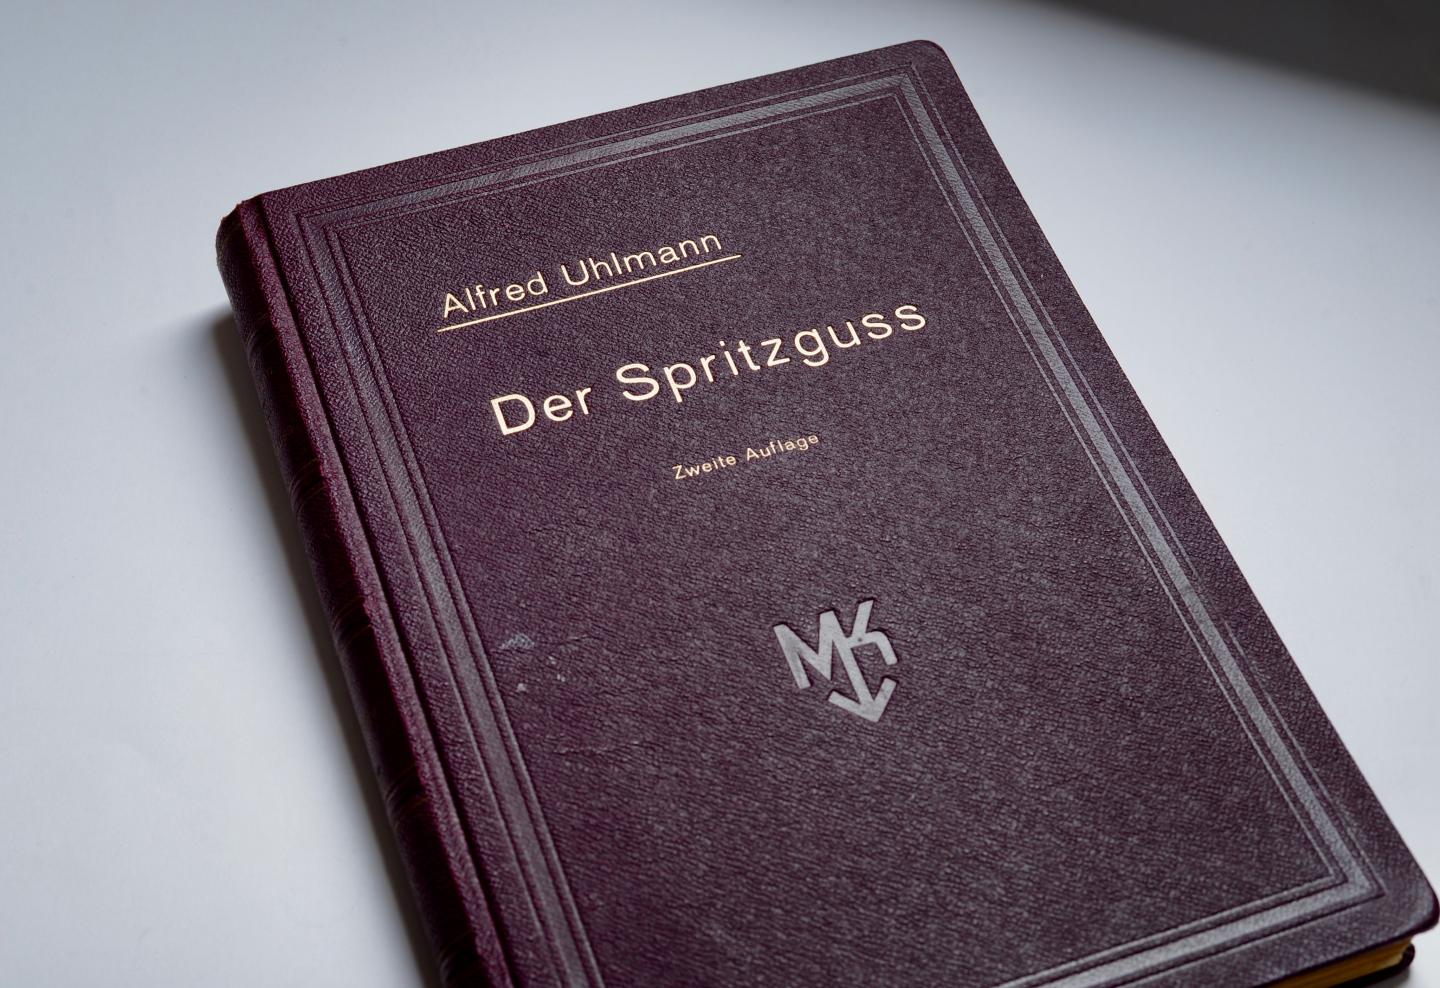 Uhlmann, Alfred - Der Spritzguss, Handbuch zur Herstellung von Fertigguß in Spritz-, Preß-, Vakuum- und Schleuderguß